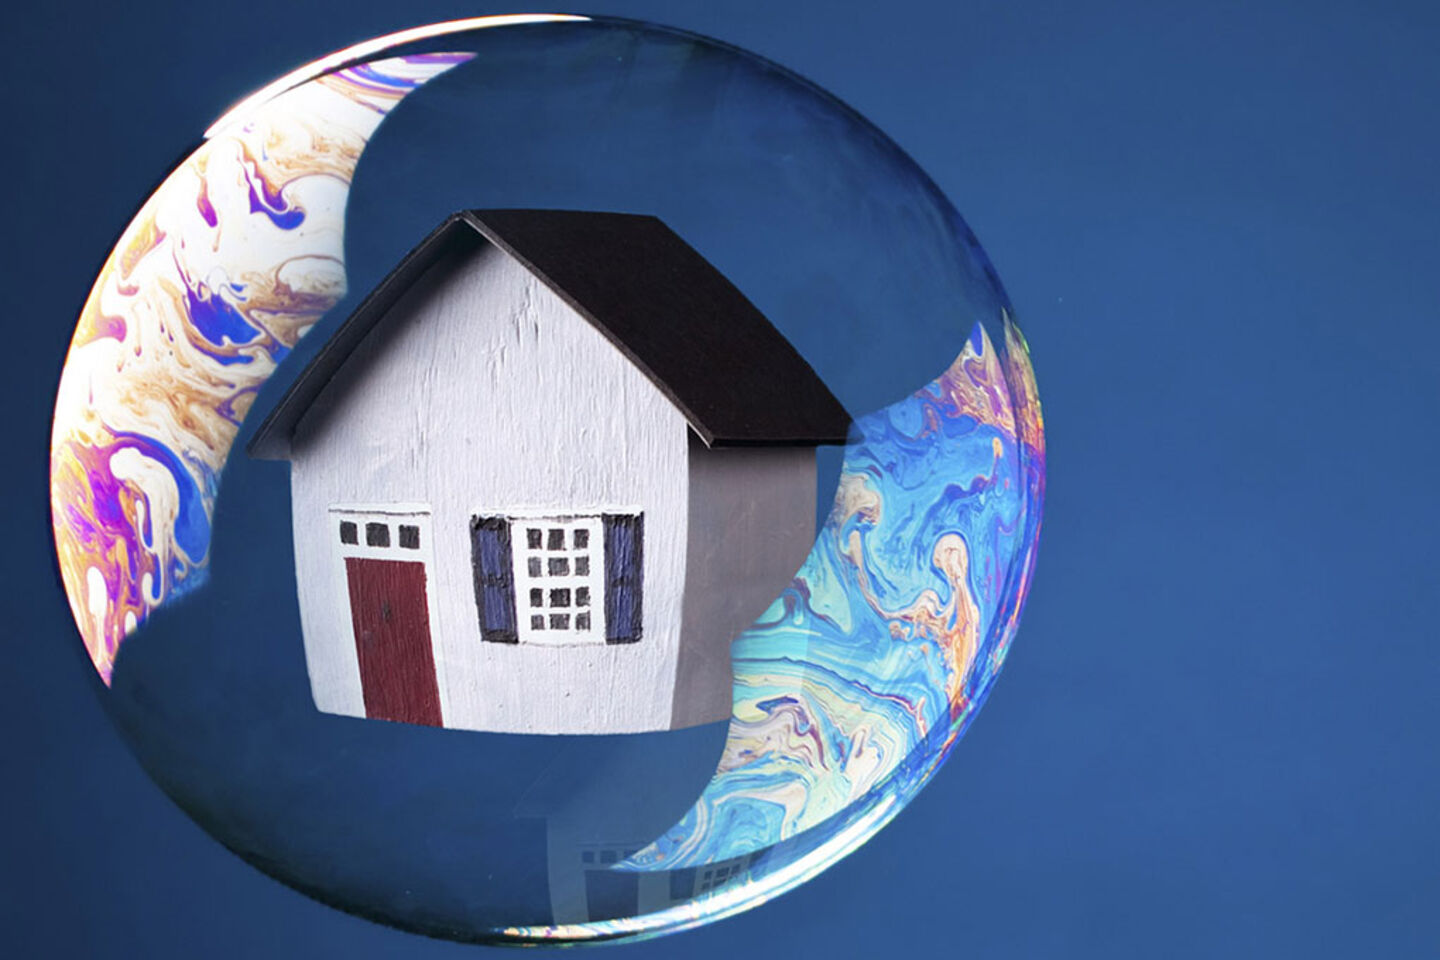 Immobilier : faut-il craindre une bulle